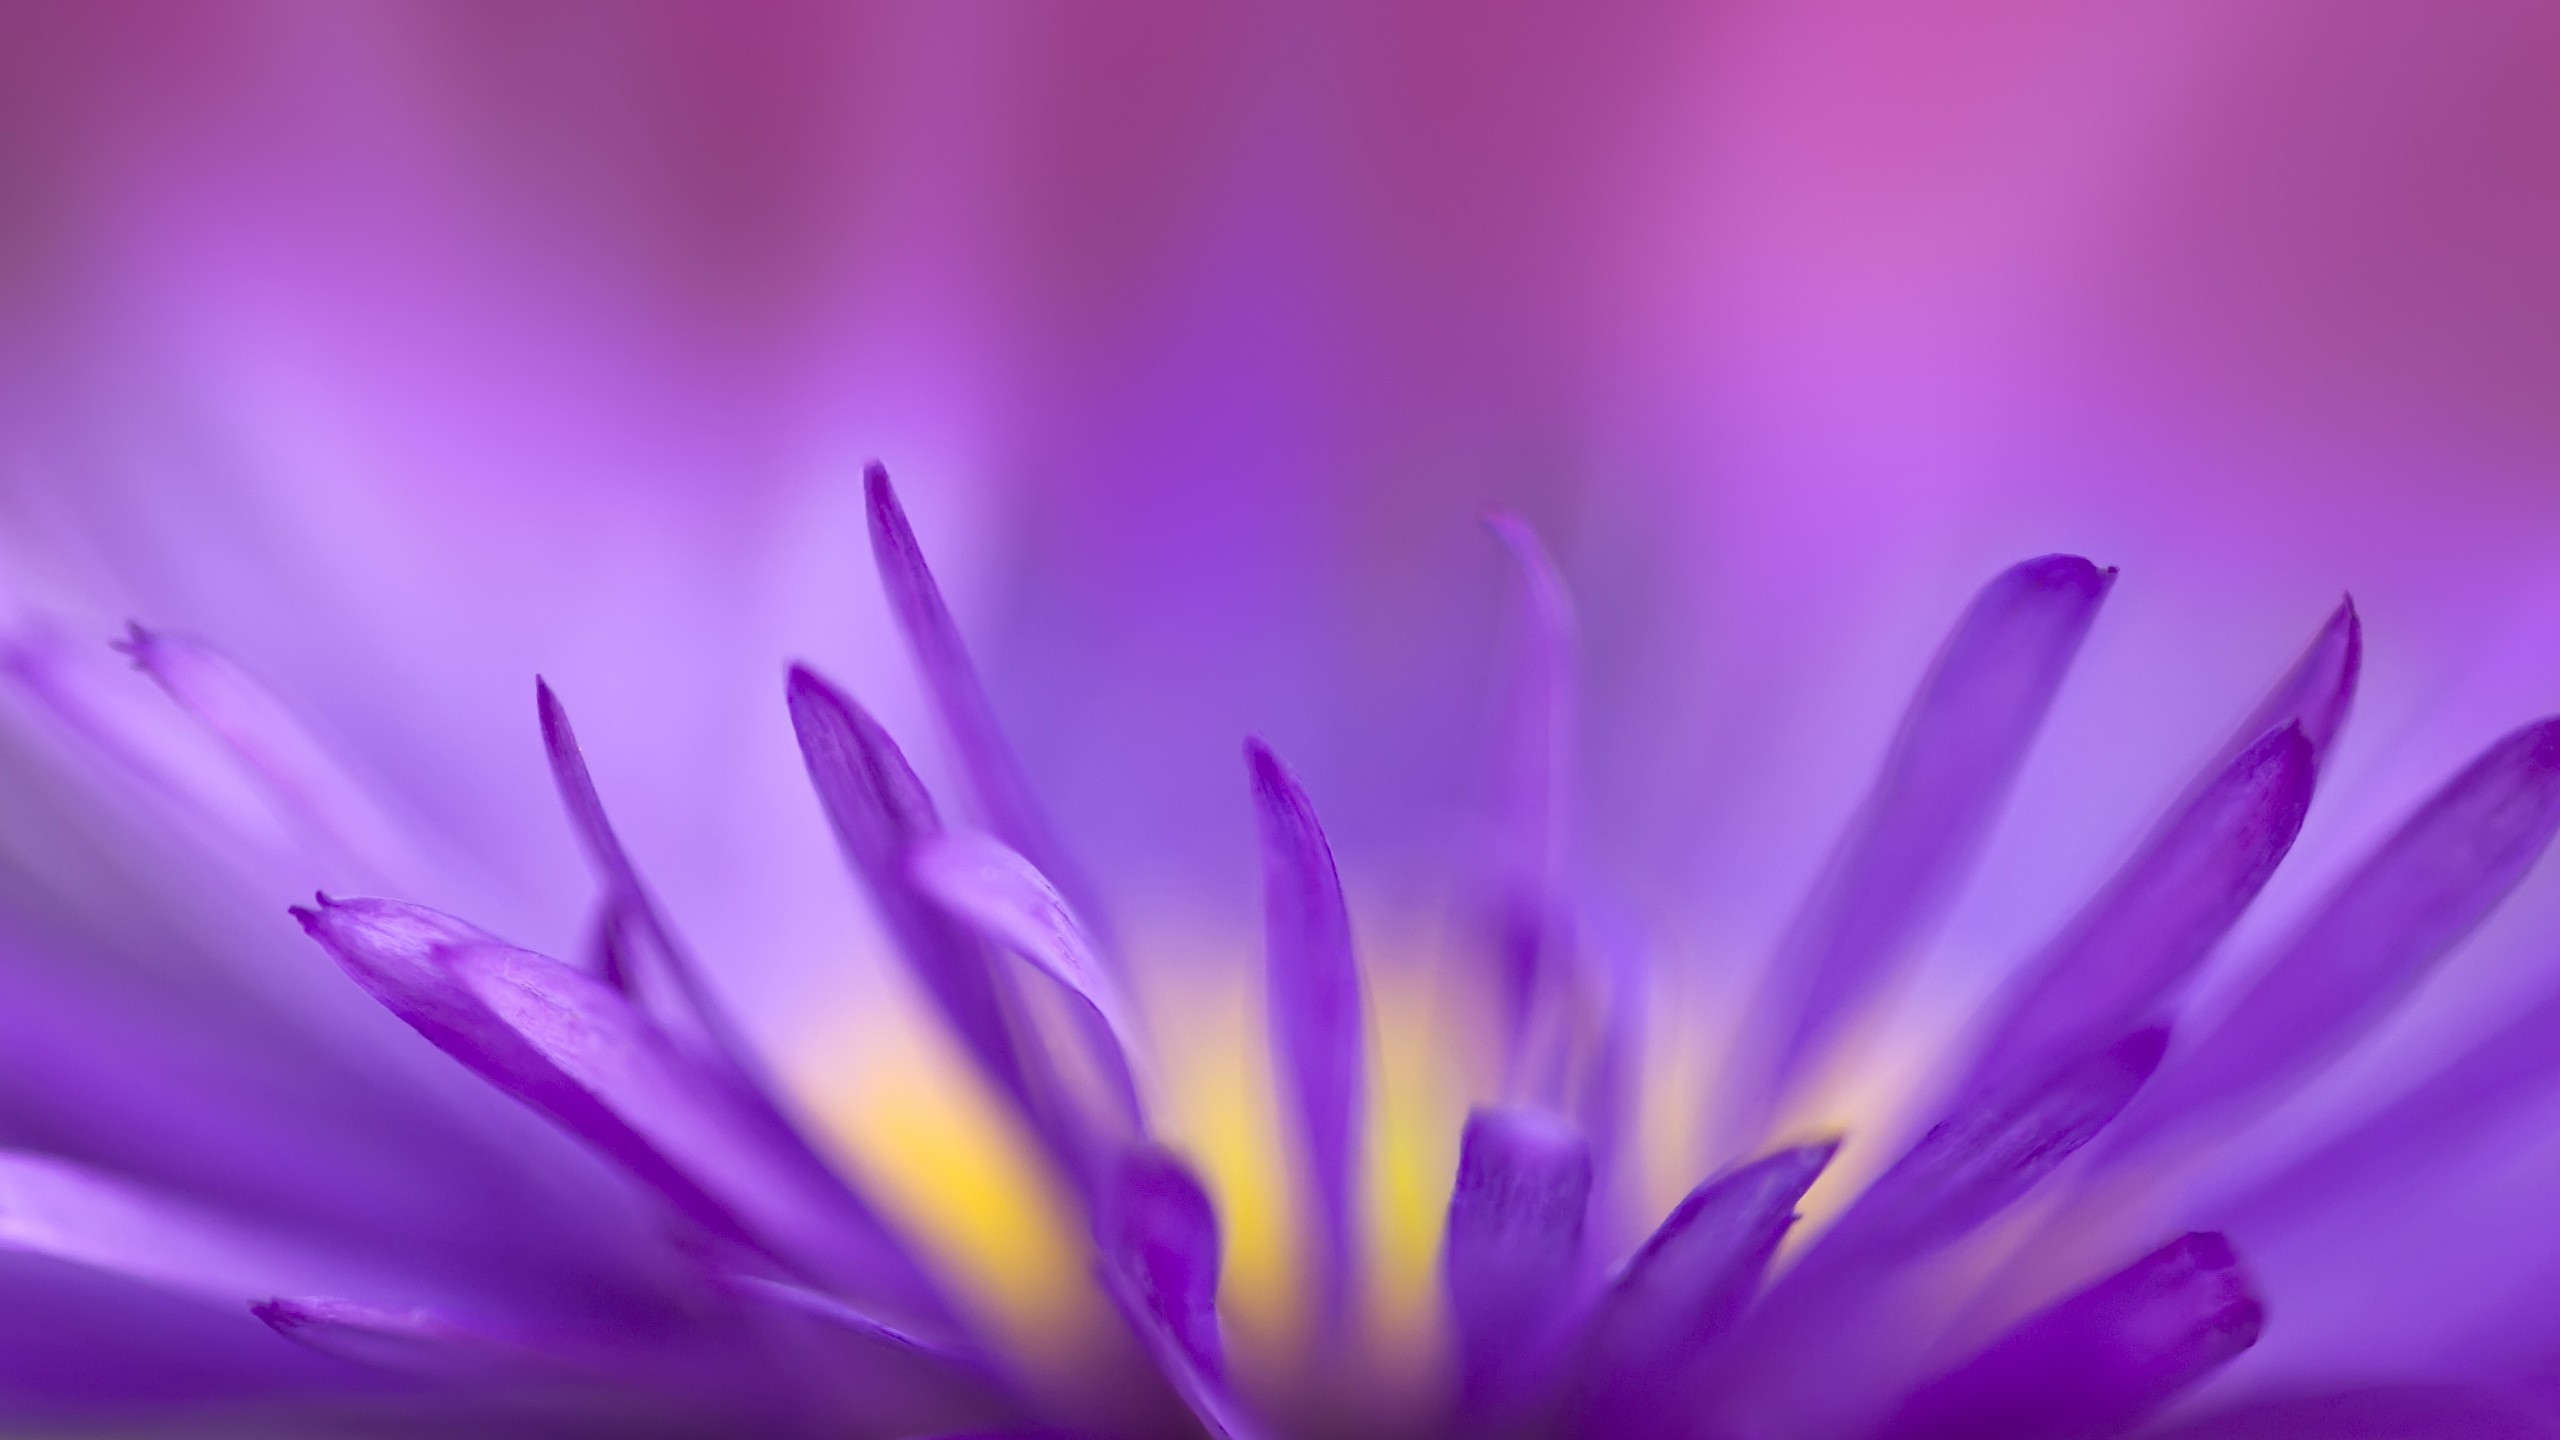 2560x1440 ... x 1440 Original. Description: Download Purple Flames Flowers wallpaper  ...